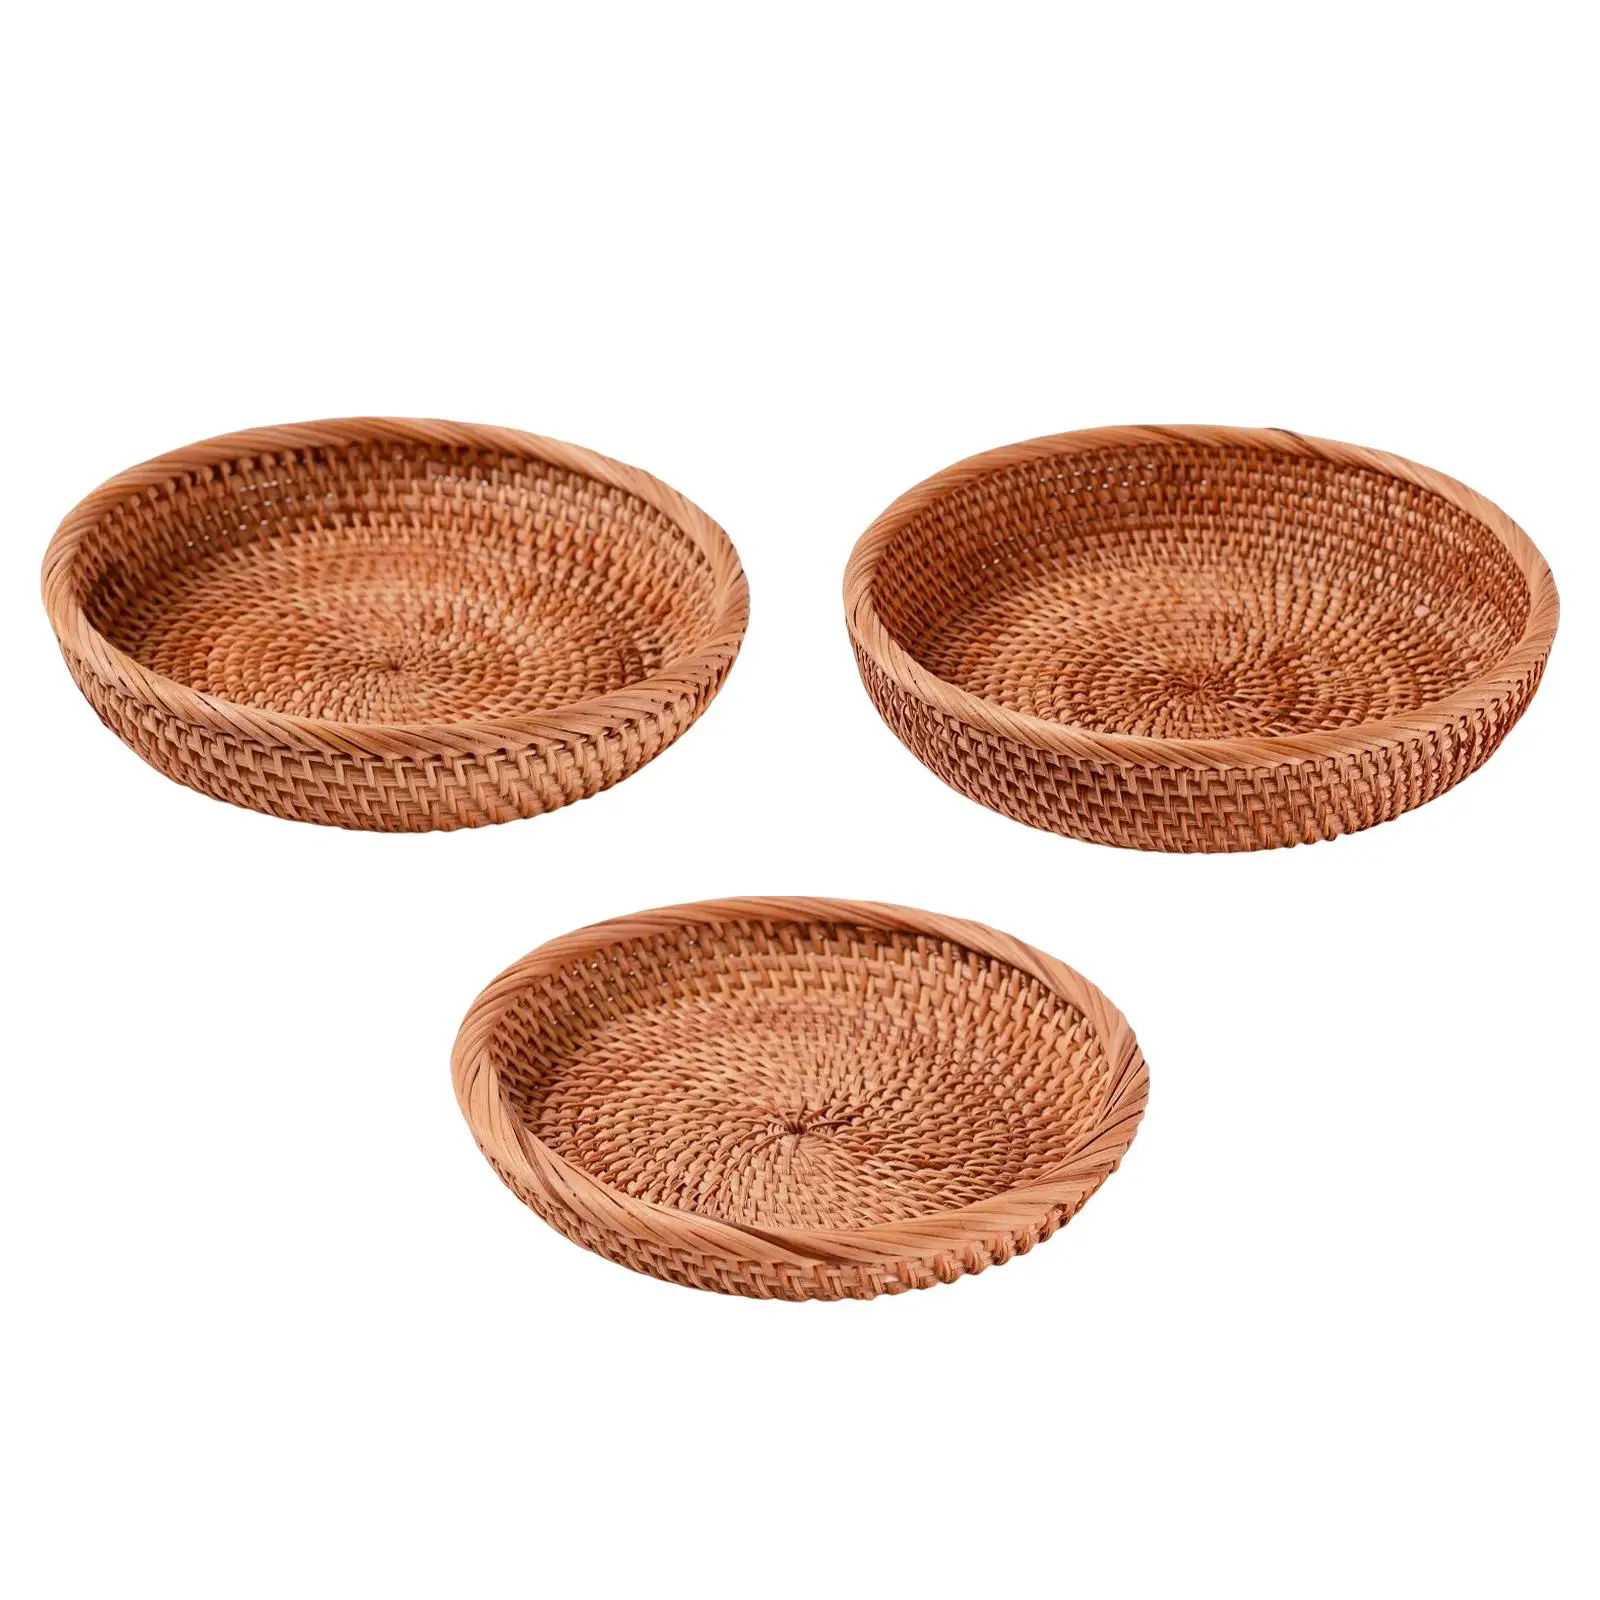 Wicker Tray Tabletop Decorative Food Serving Basket Handwove Wicker Bread Basket Wicker Bowl for kitchen Fruit Home Keys